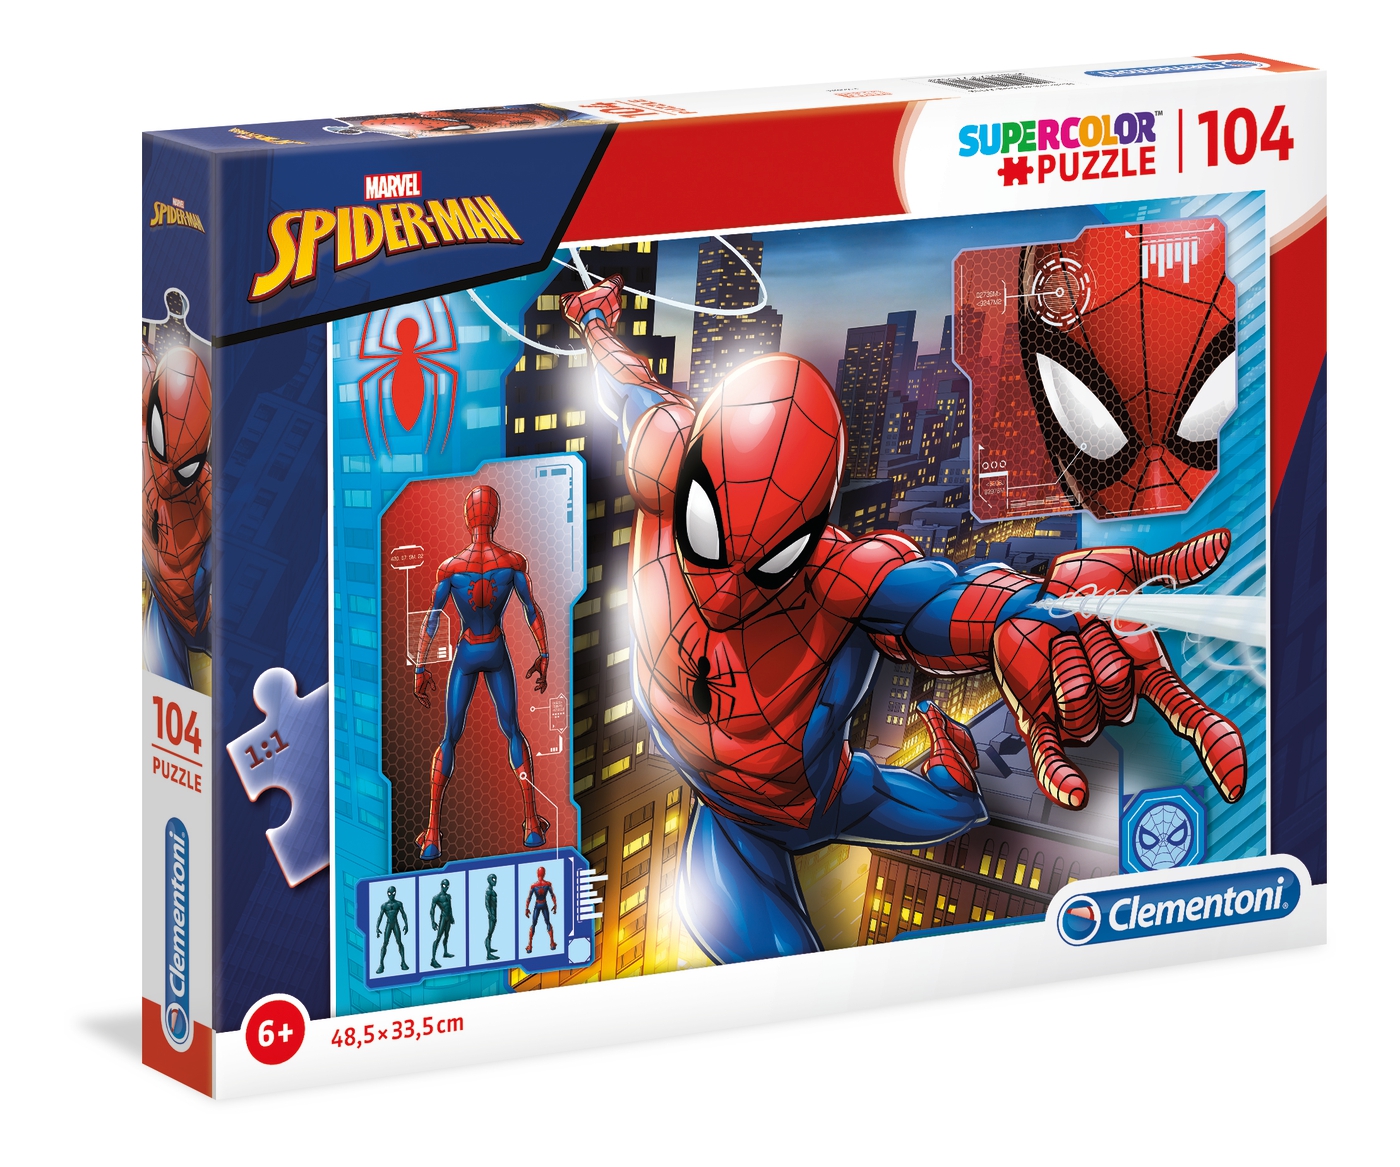 Clementoni-Spiderman Puzzle 3d Vision 104 pieces 20148 